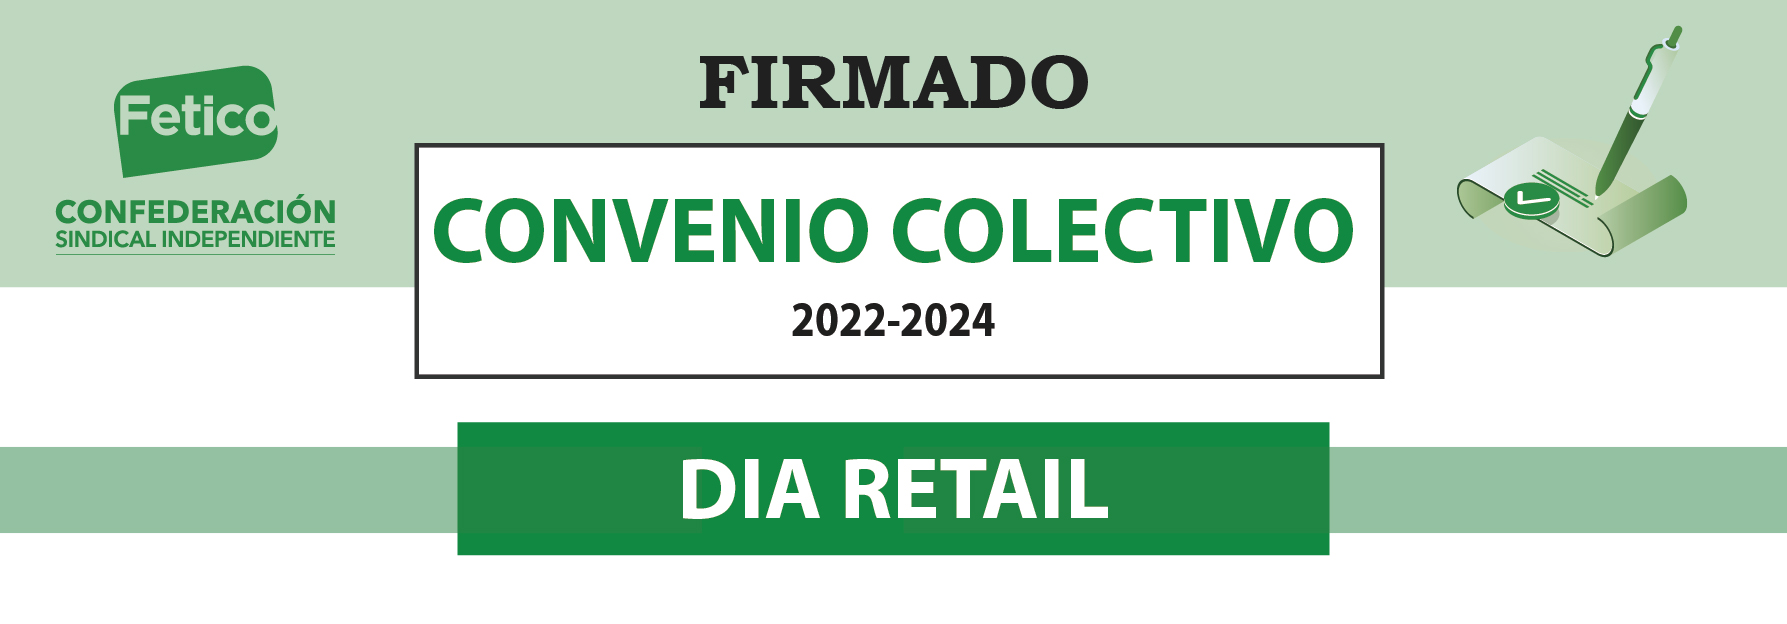 Firmado el nuevo Convenio Colectivo en DIA Retail 2022-2024 